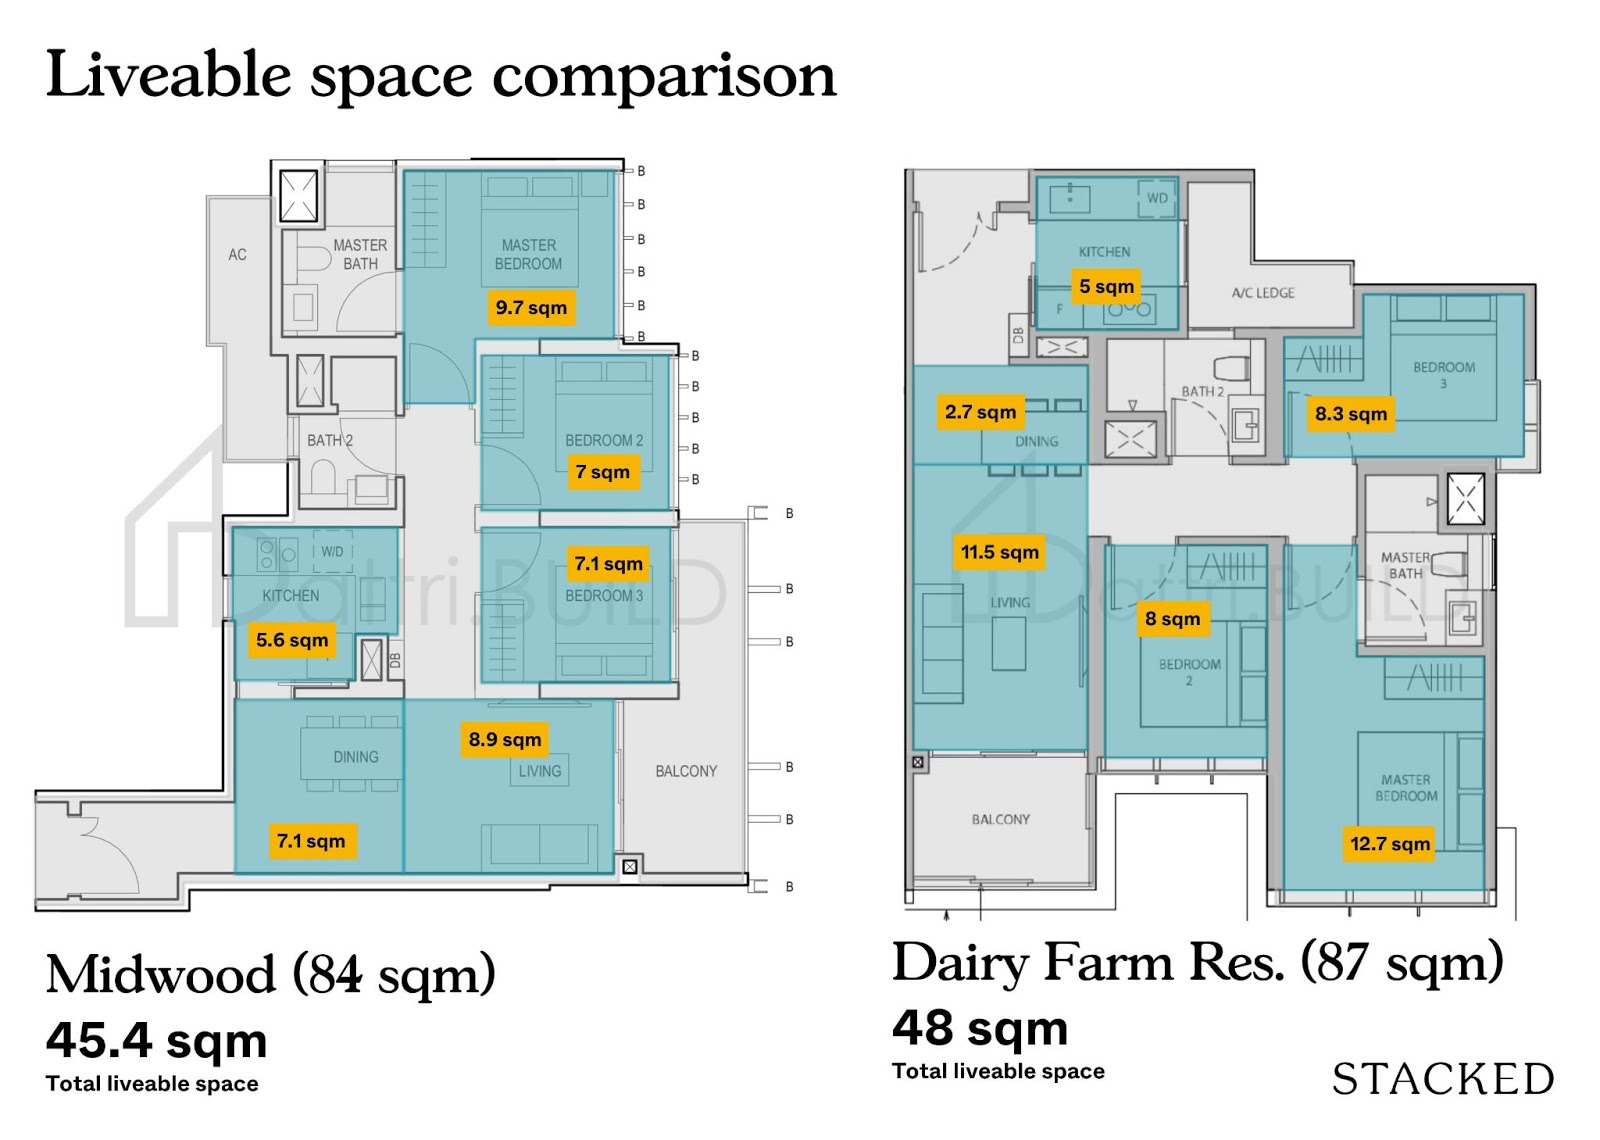 dairy farm comparison